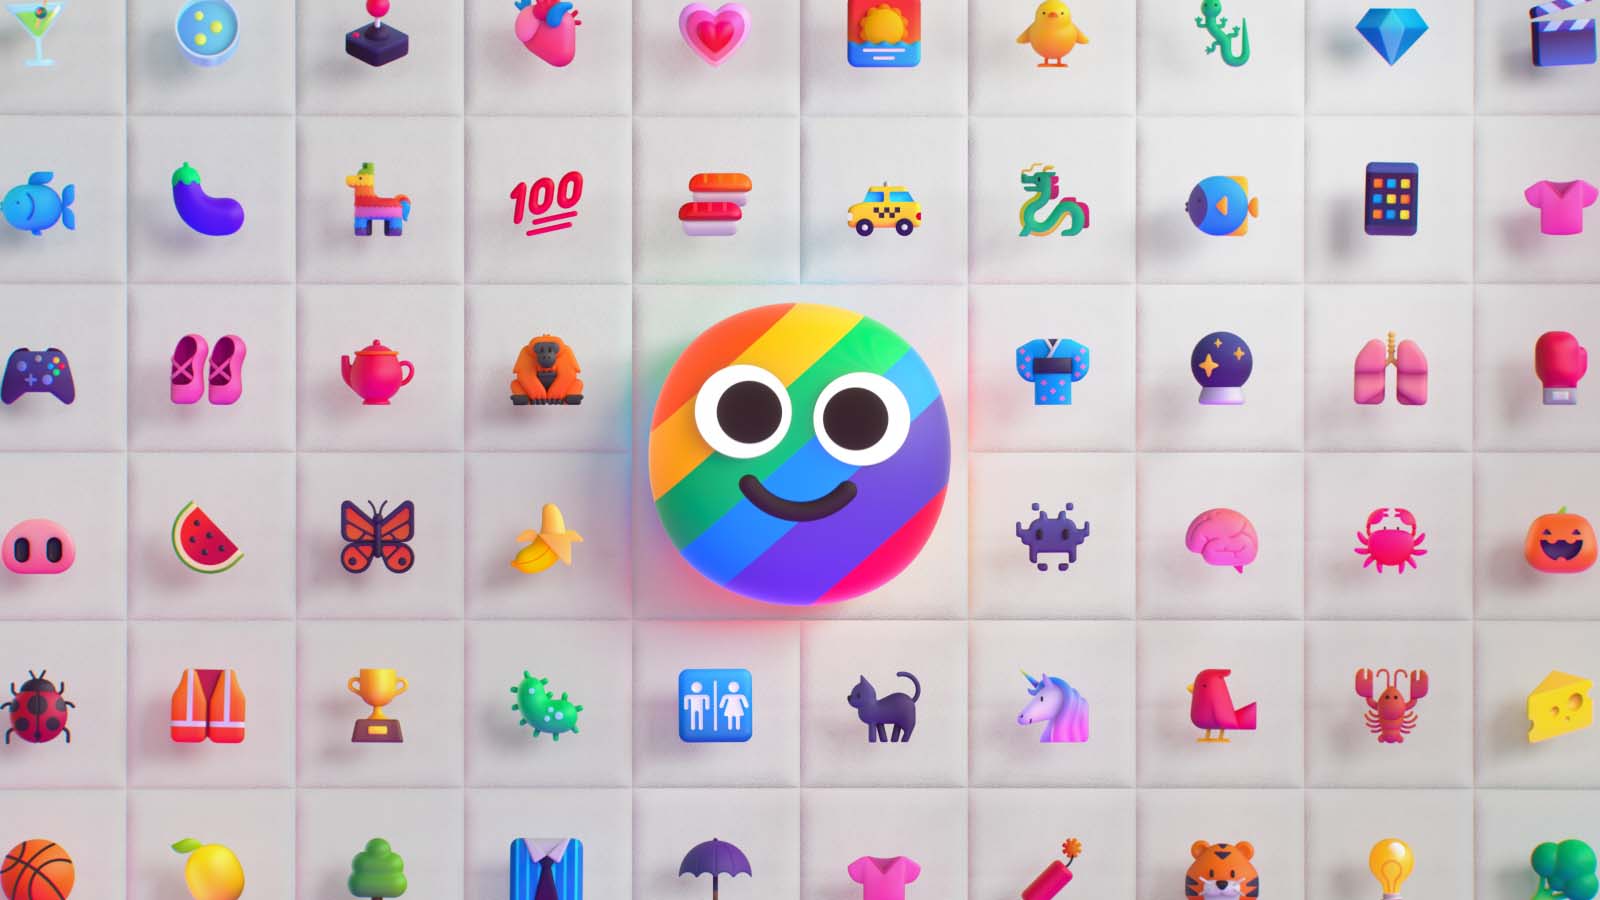 Esploriamo le ultime aggiunte all'universo emoji e il loro impatto sulla comunicazione digitale.